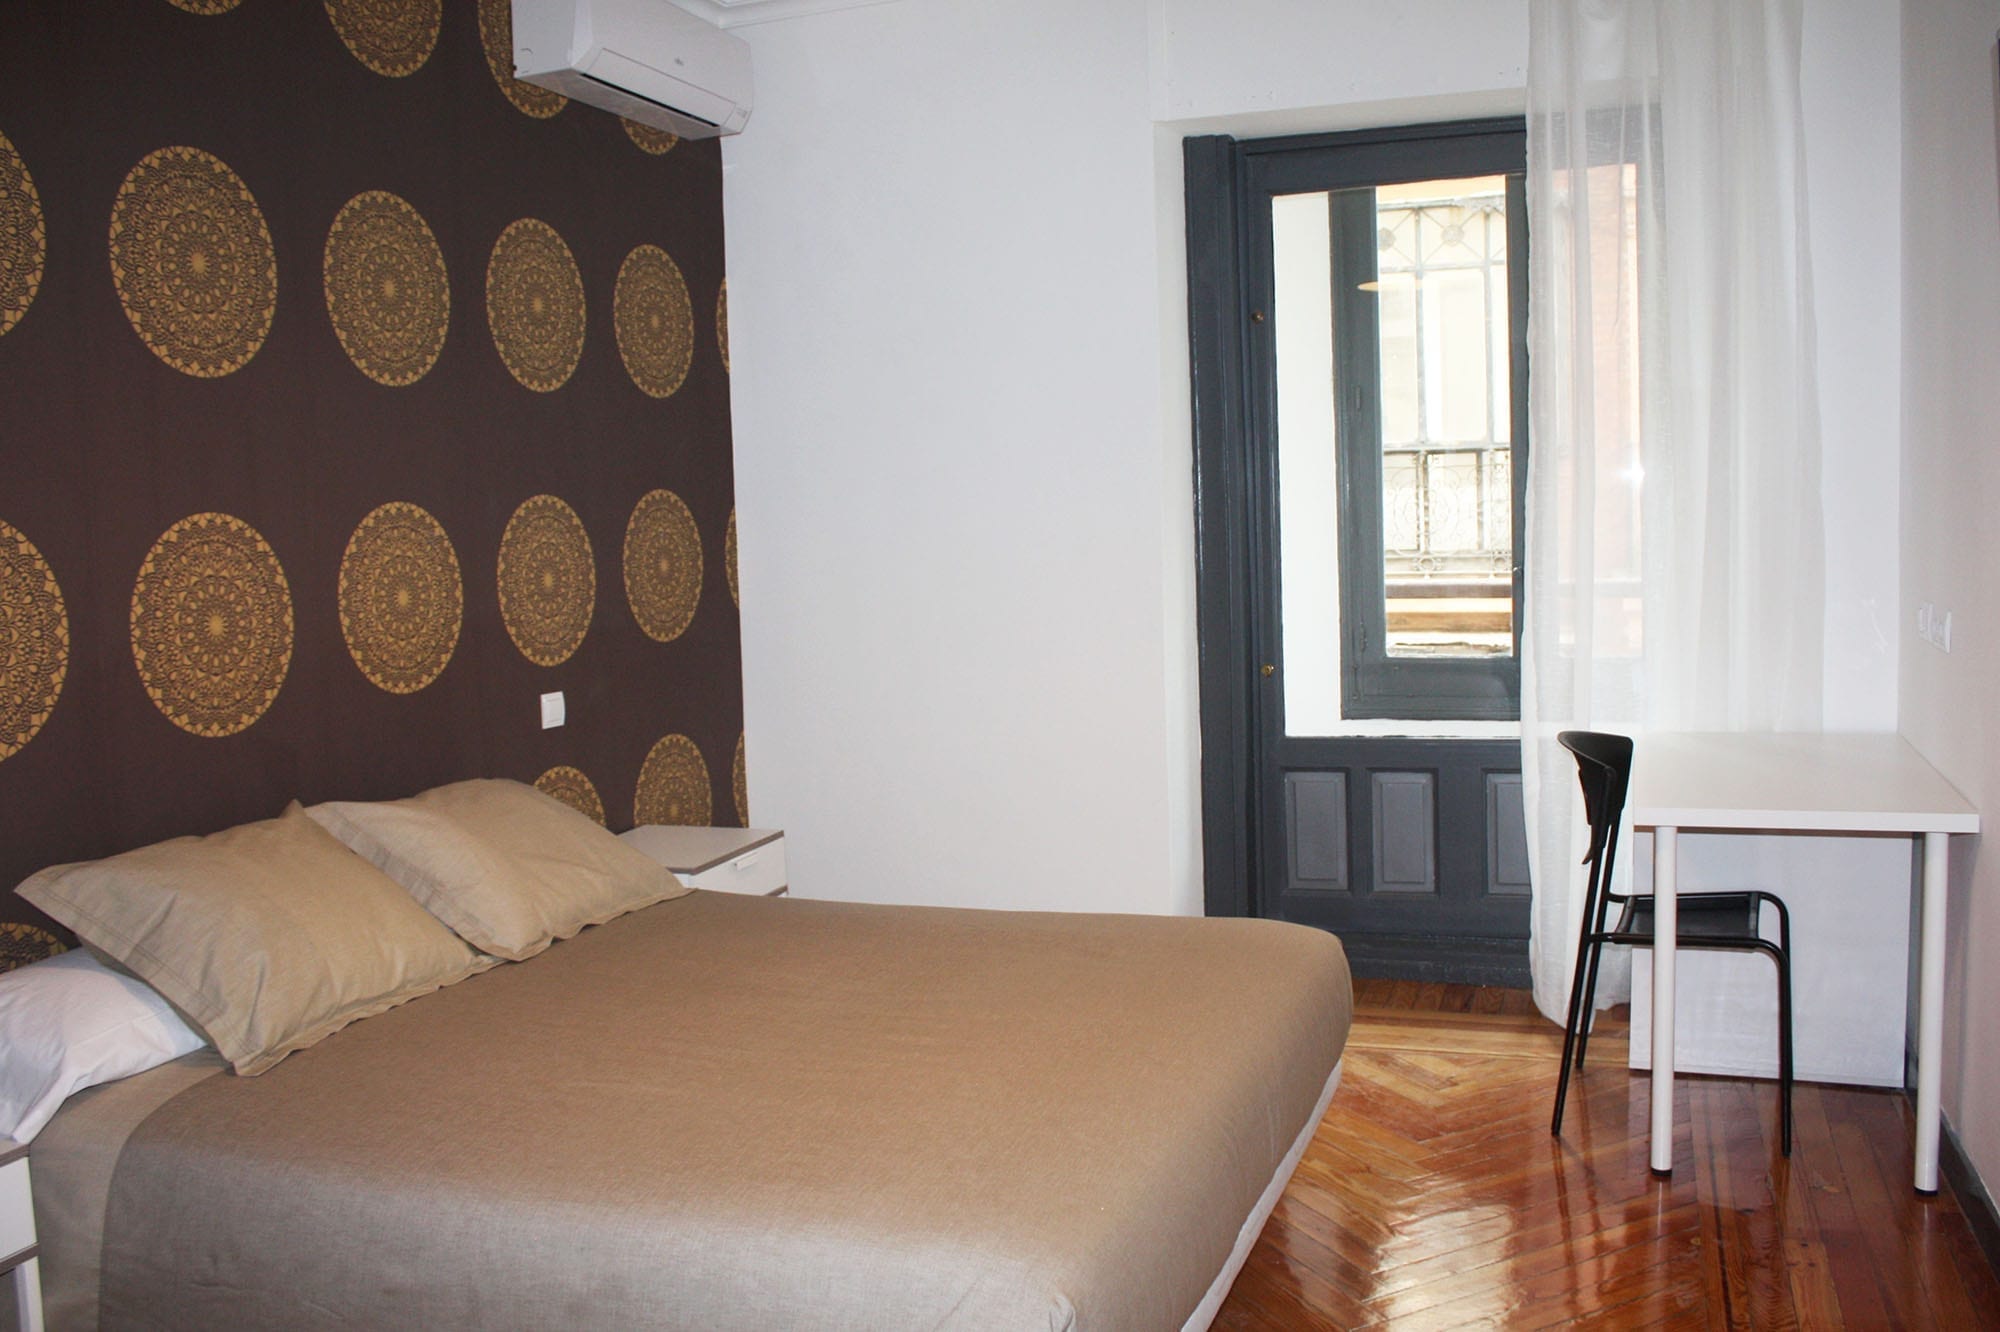 Room. 09 student apartment in gran via 15 vitium residencias